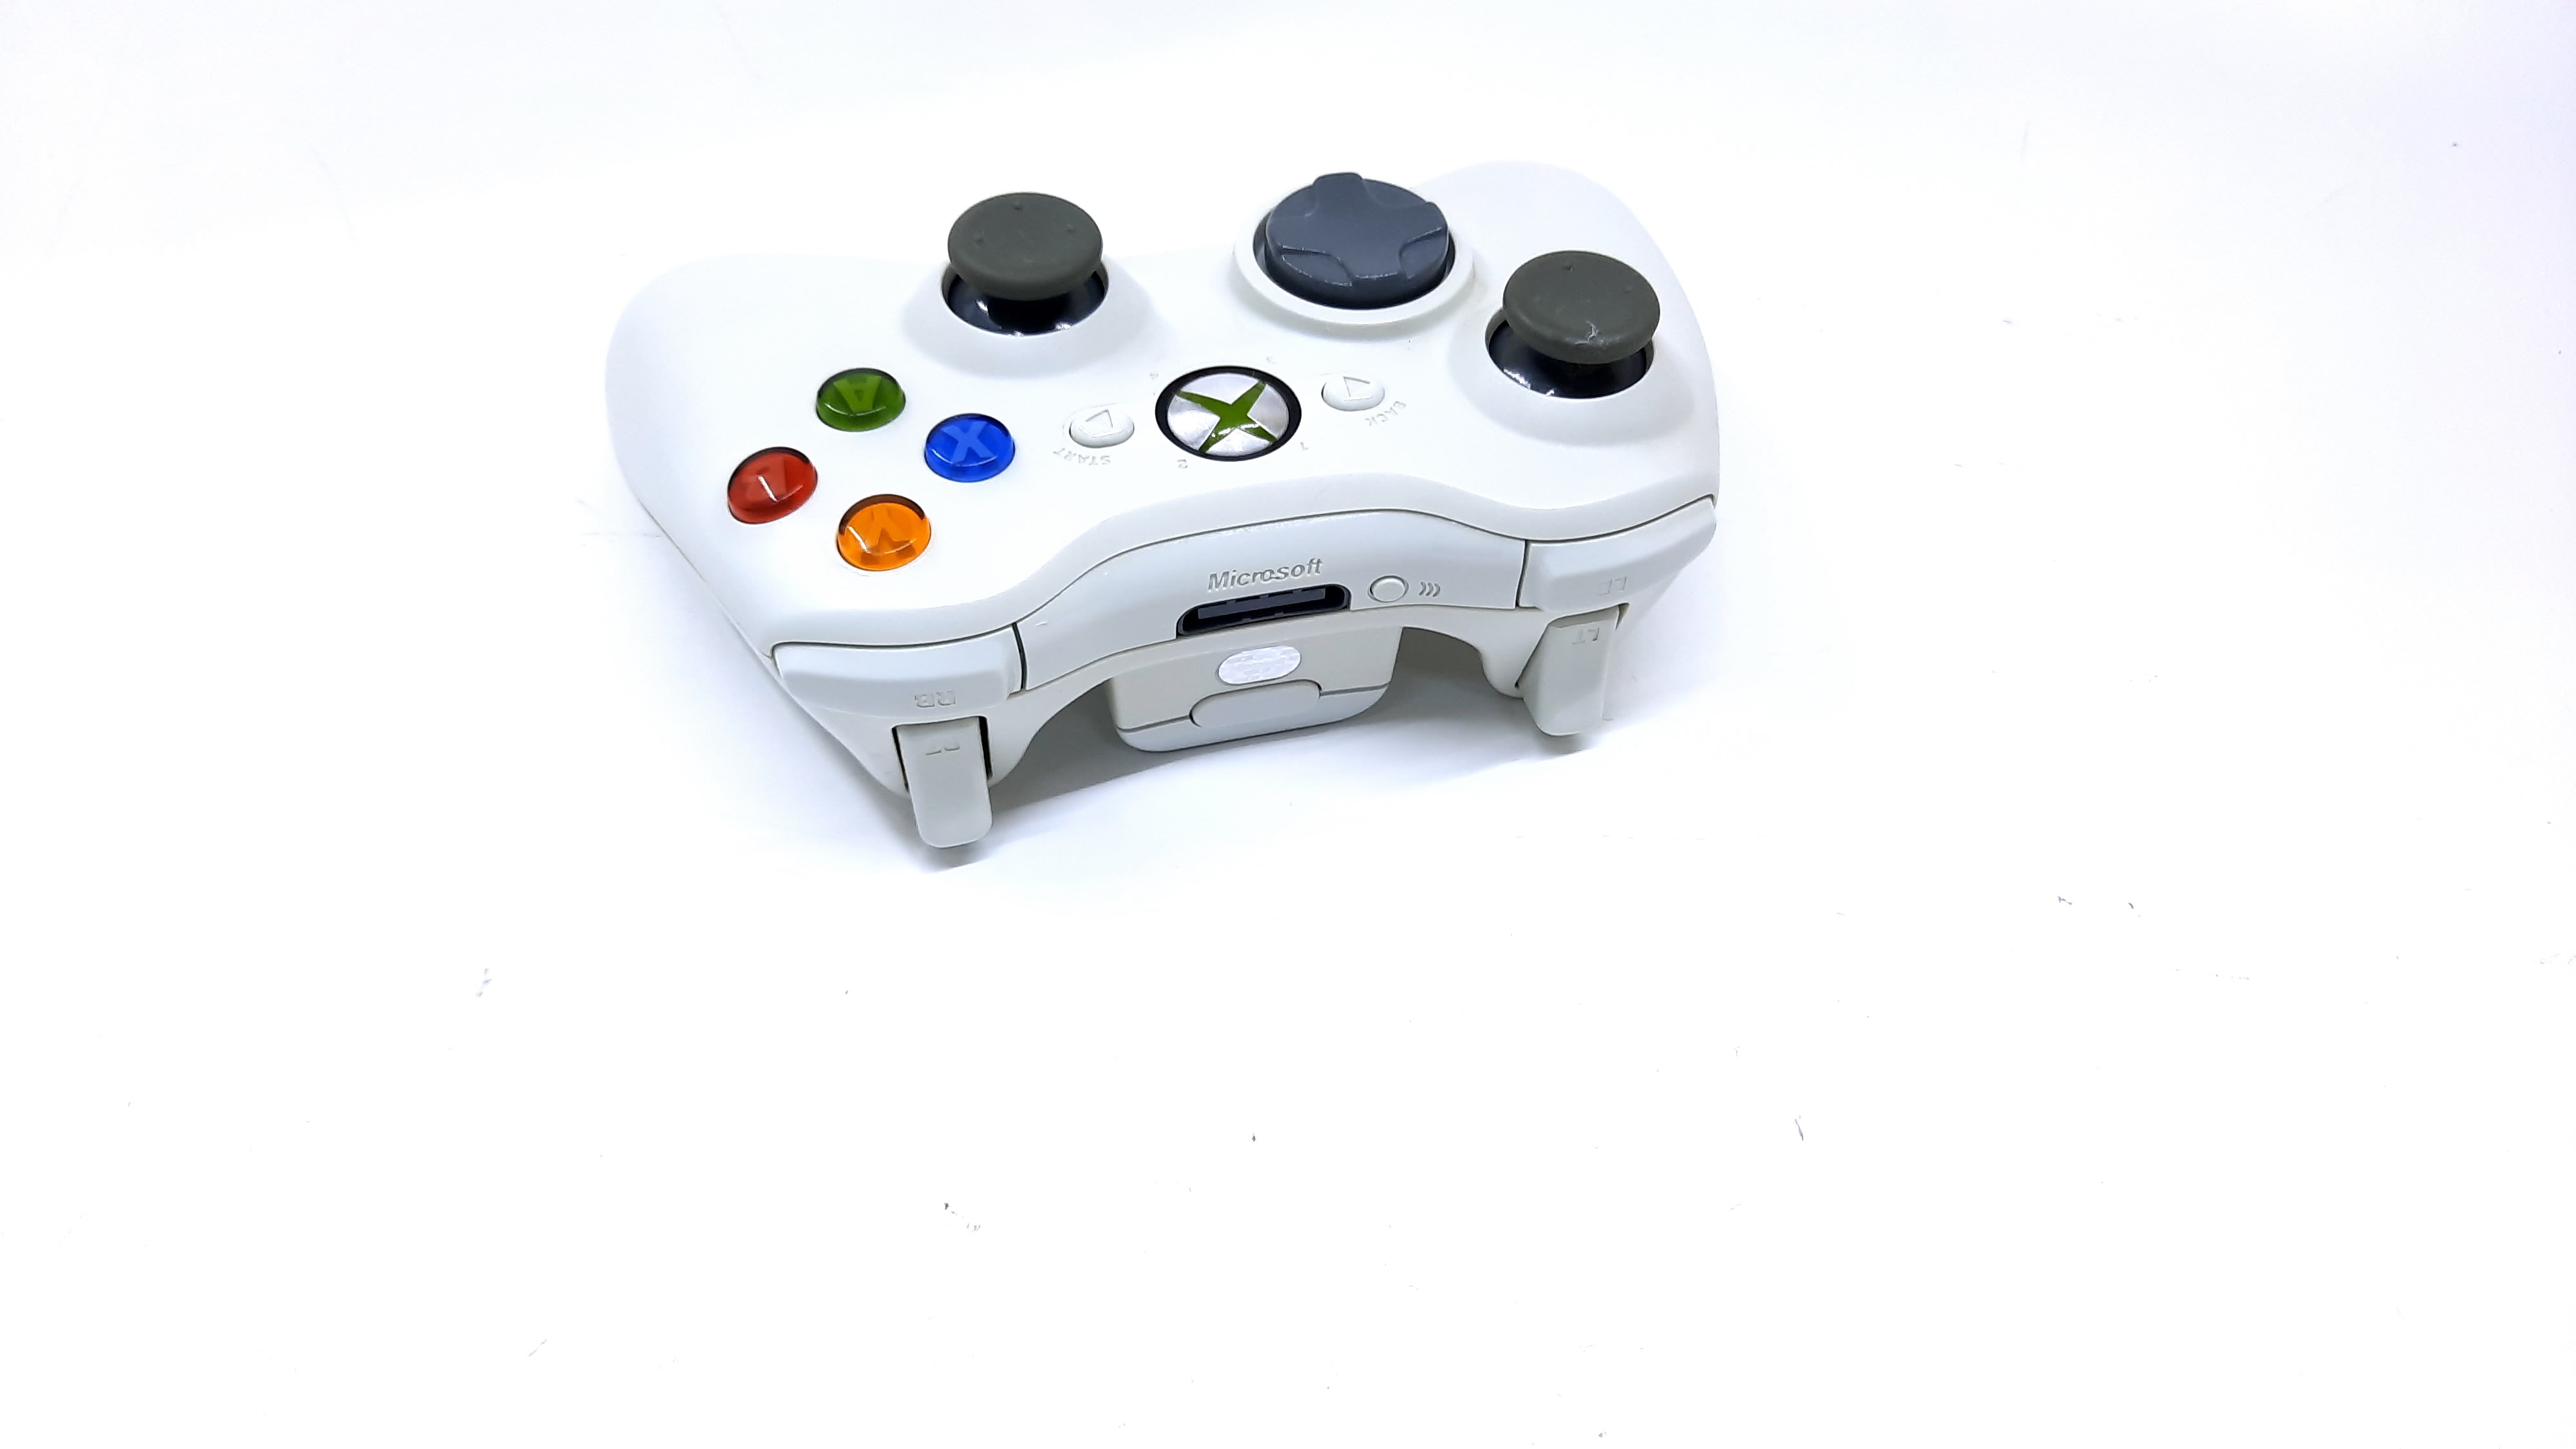 Крестовина геймпада. Геймпад беспроводной Microsoft Xbox Wireless Controller (Lunar Shift) серый. Геймпад Terios t3/x3/s3, PXN. Геймпад беспроводной Microsoft Xbox Wireless Controller золотой. Xbox 360 геймпад беспроводной со всех сторон.